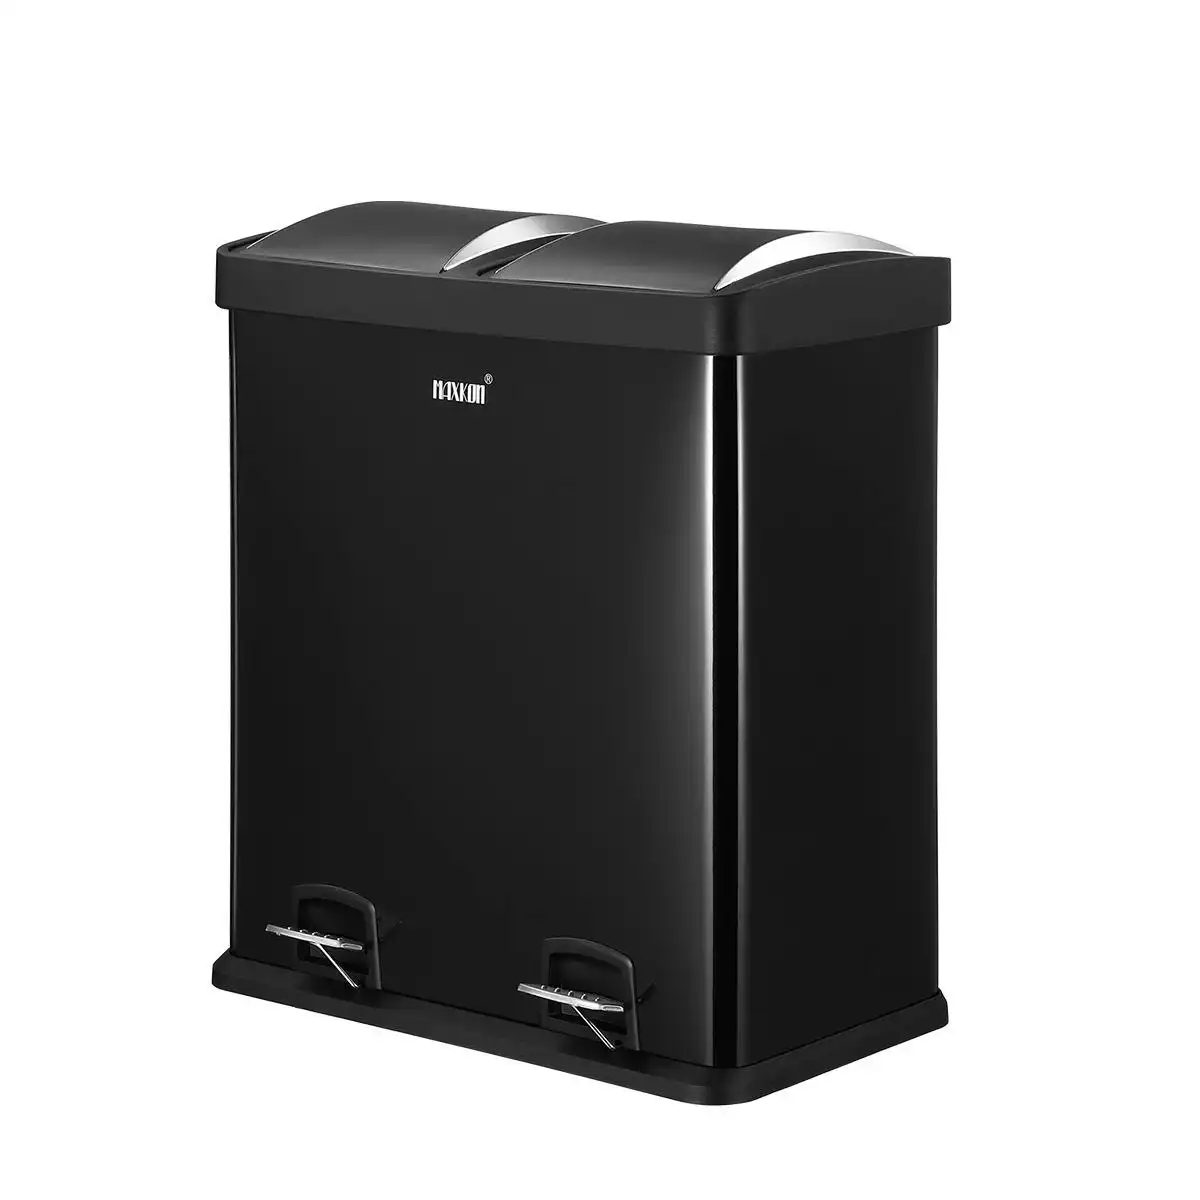 Maxkon 60L Dual Compartment Pedal Bin Kitchen Recycling Waste Bins Coated Steel Black